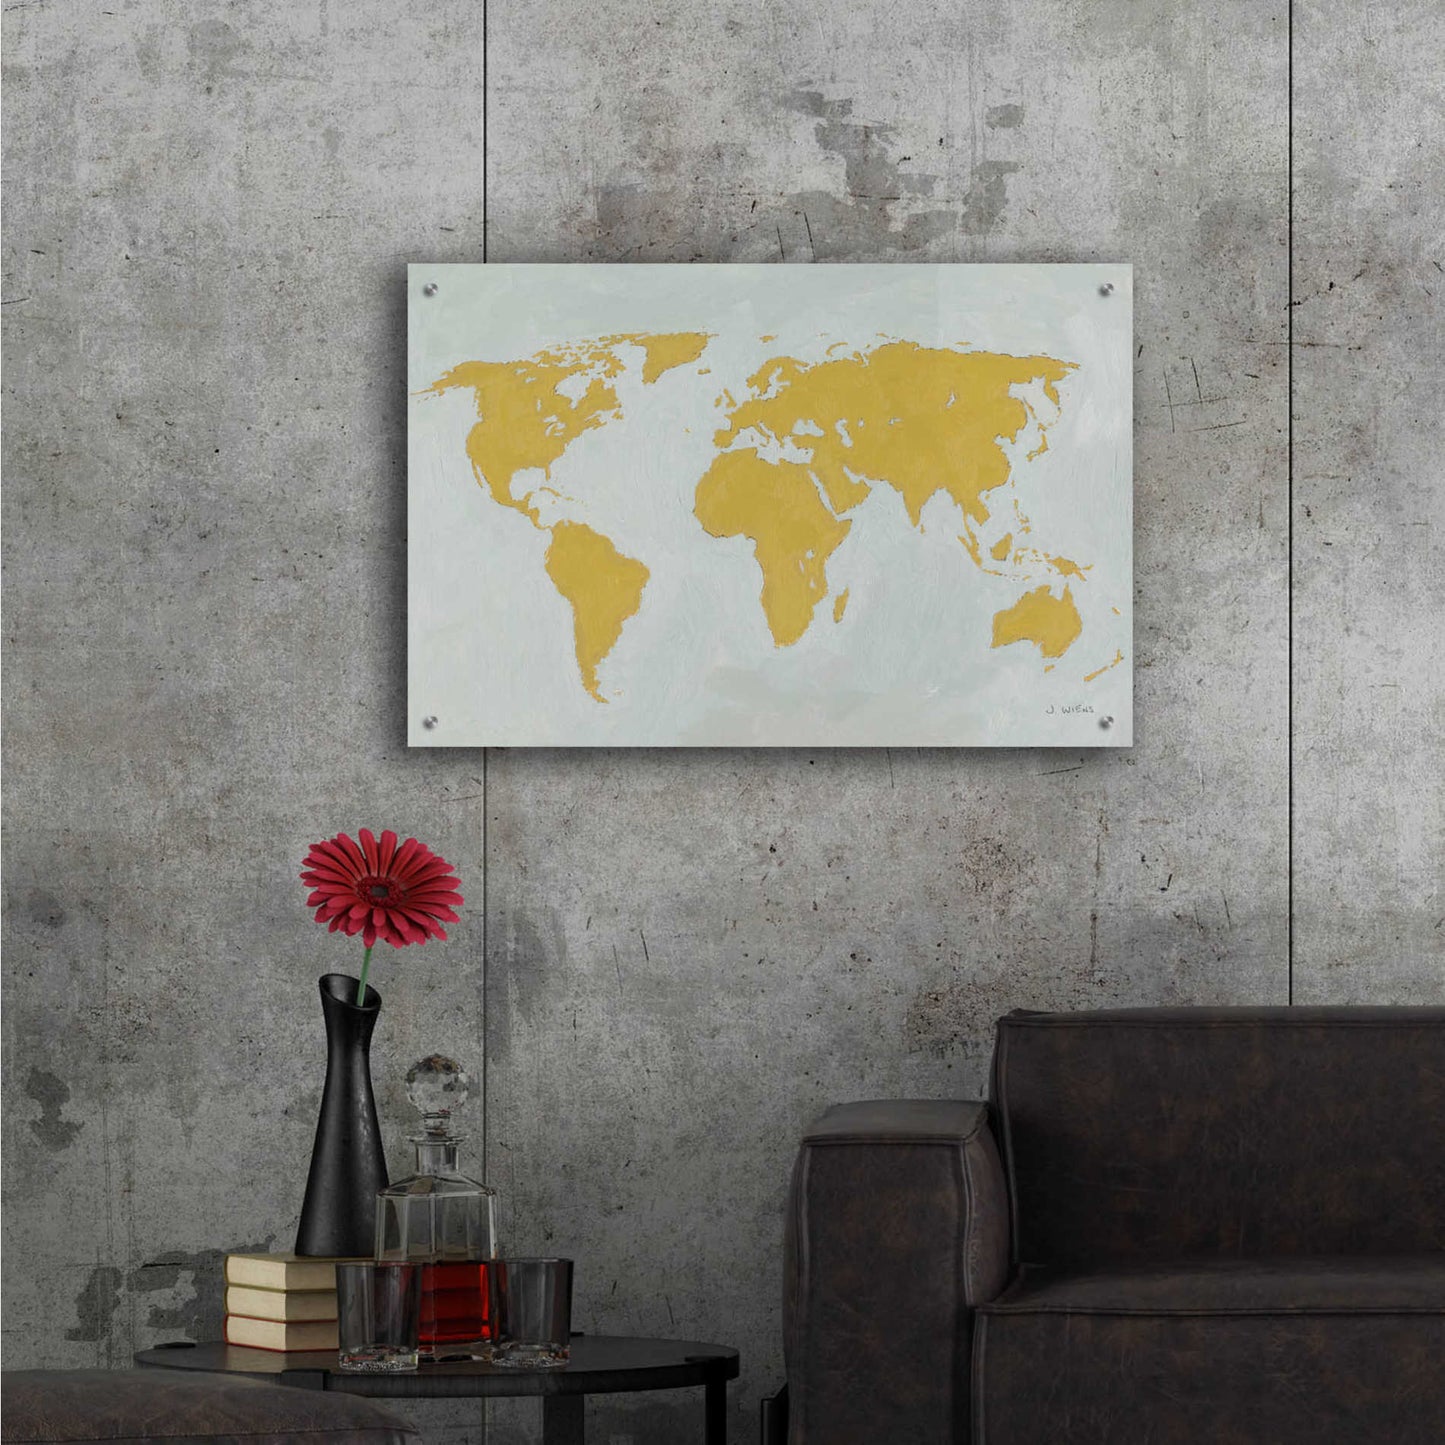 Epic Art 'Golden World' by James Wiens, Acrylic Glass Wall Art,36x24